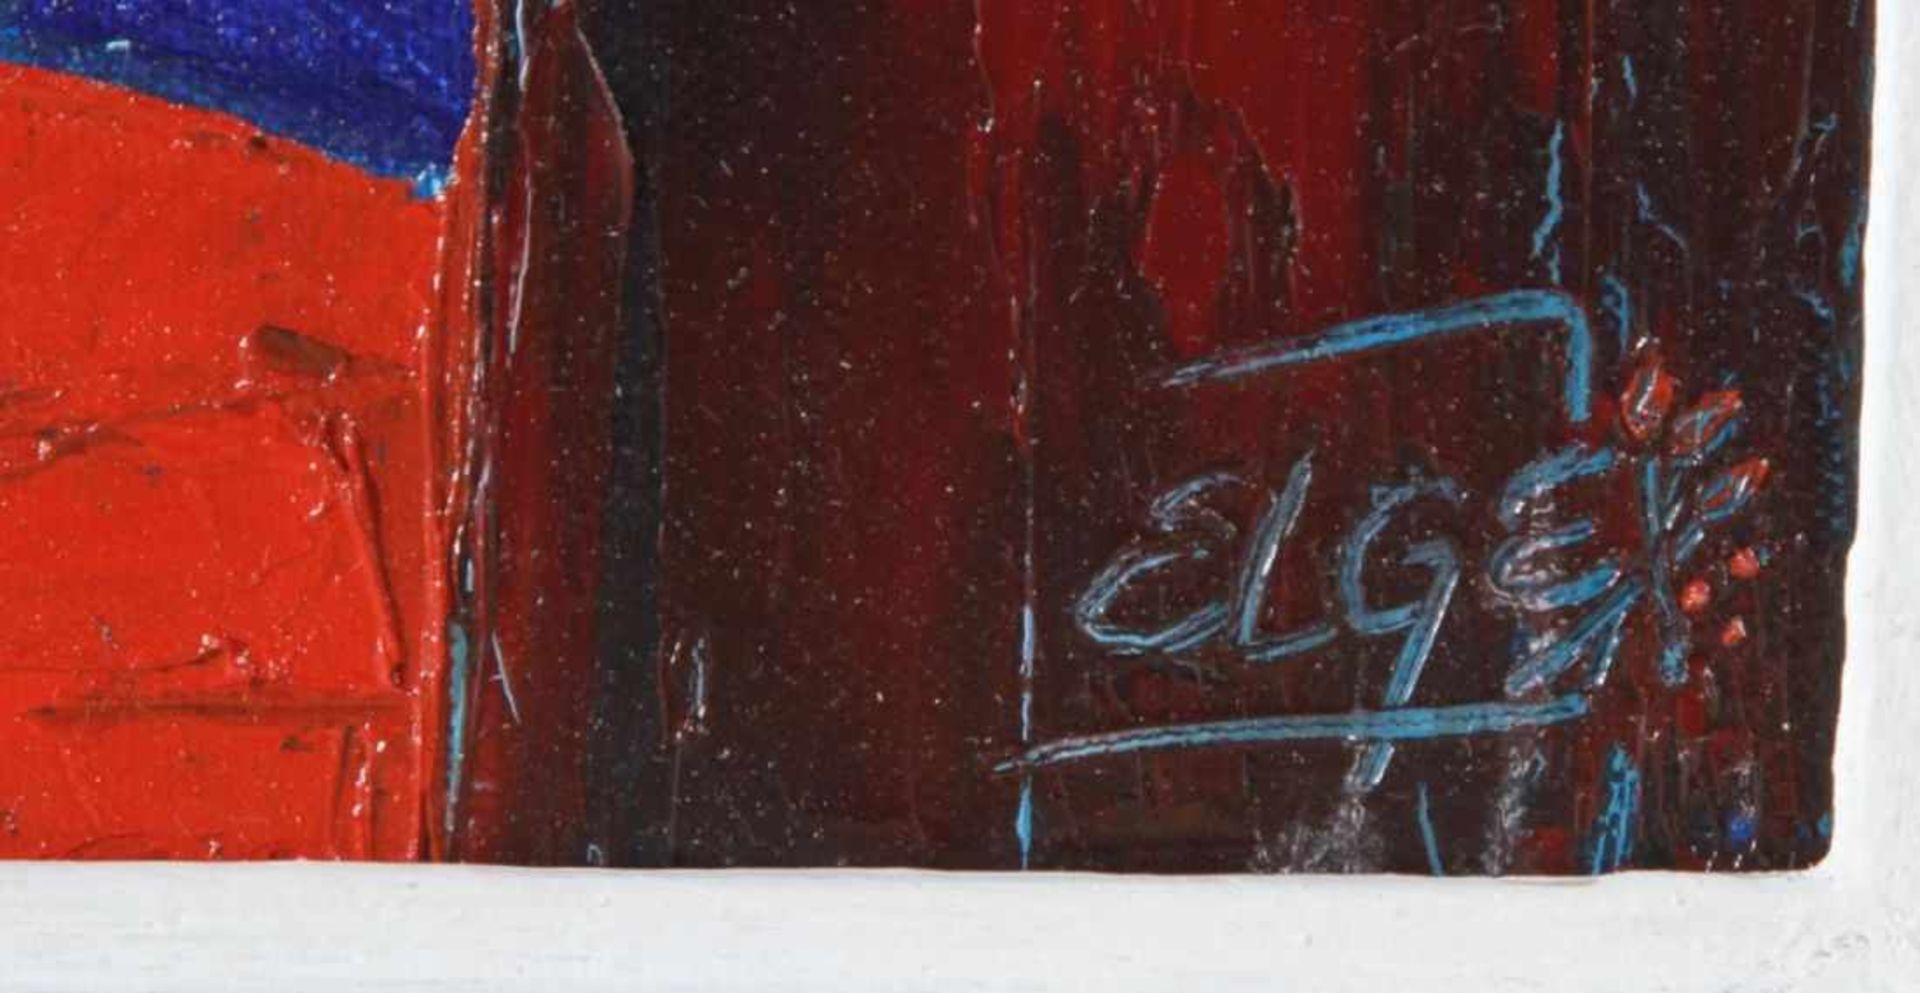 Elge, zeitgenössischer, holländischer Maler. "Frauenportrait", sign., Öl/Lw., 50 x 40 cm- - -20.00 % - Bild 2 aus 2